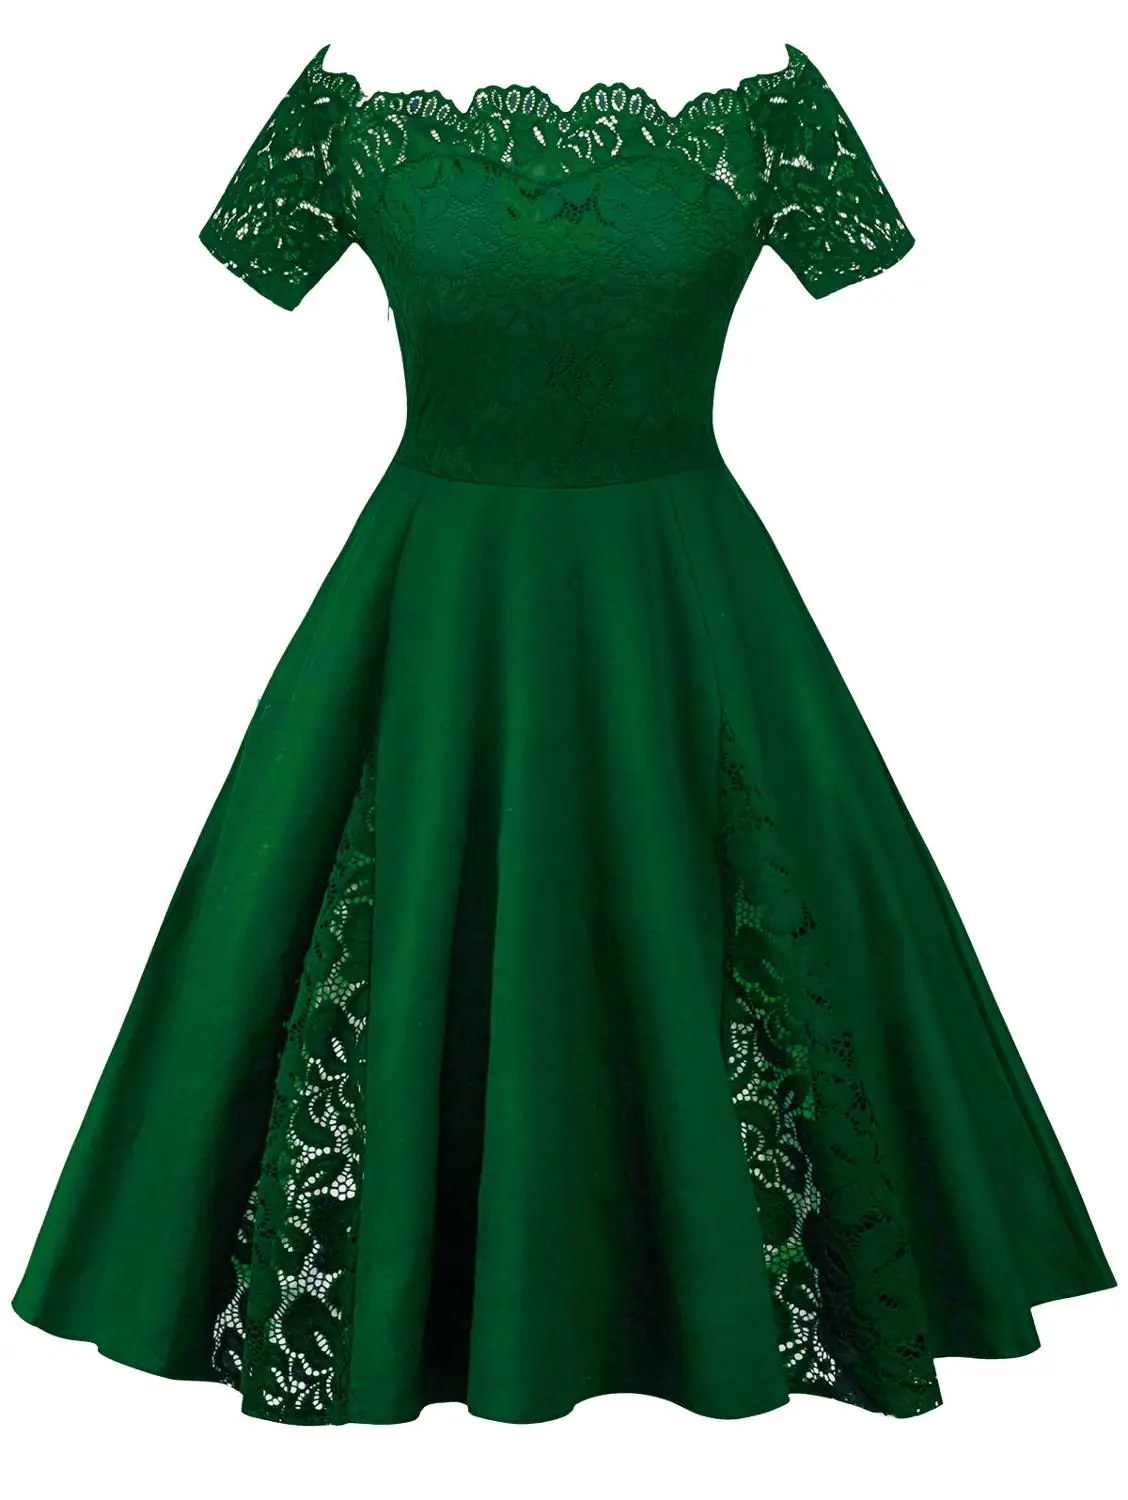 ROSEGAL размера плюс винтажное кружевное платье с открытыми плечами и короткими рукавами а-силуэта для женщин однотонное элегантное вечернее платье 5XL - Цвет: Green